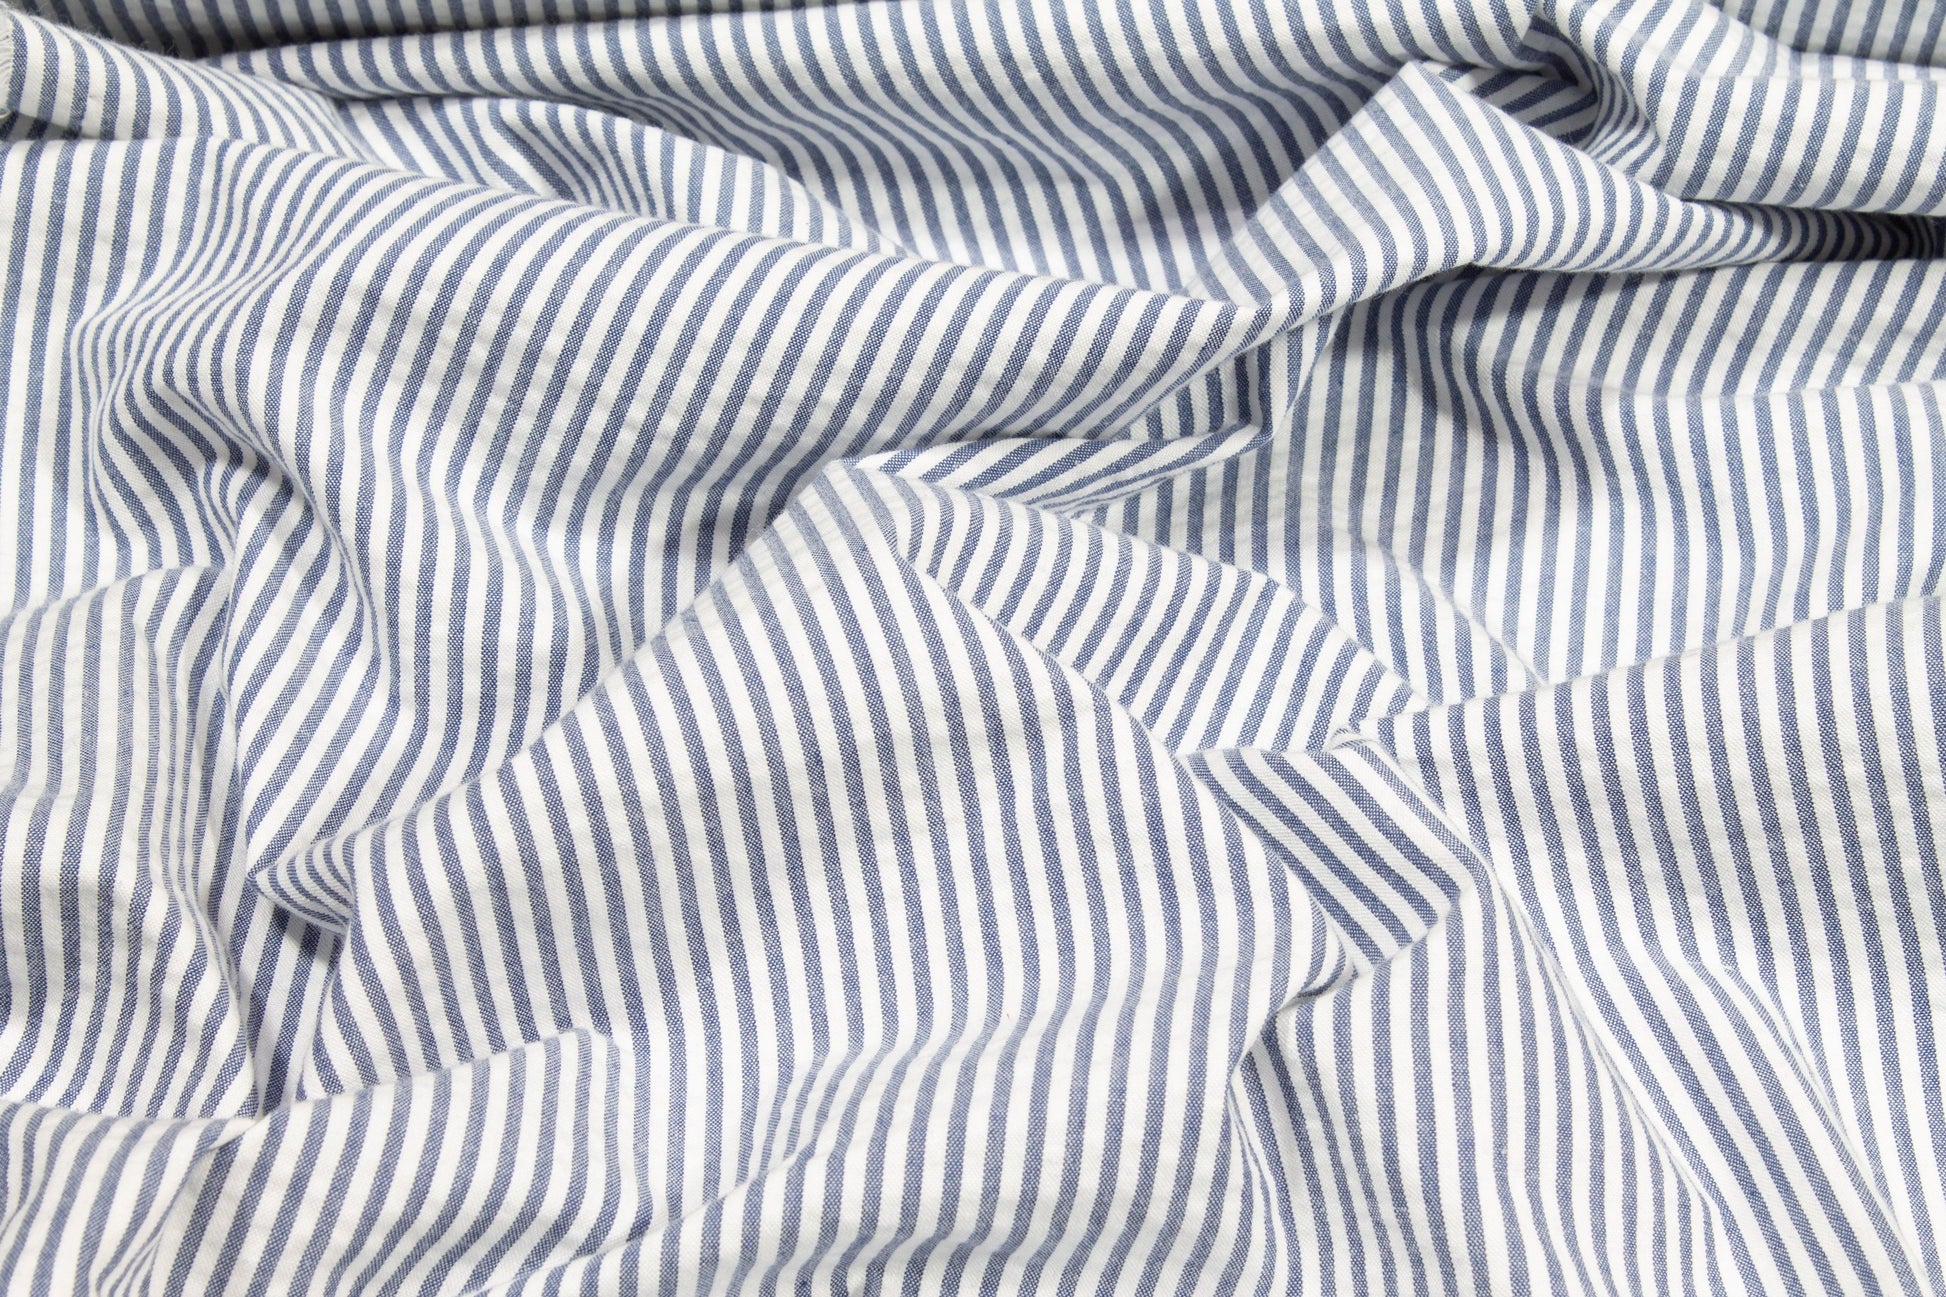 Striped Seersucker Cotton - Blue and White